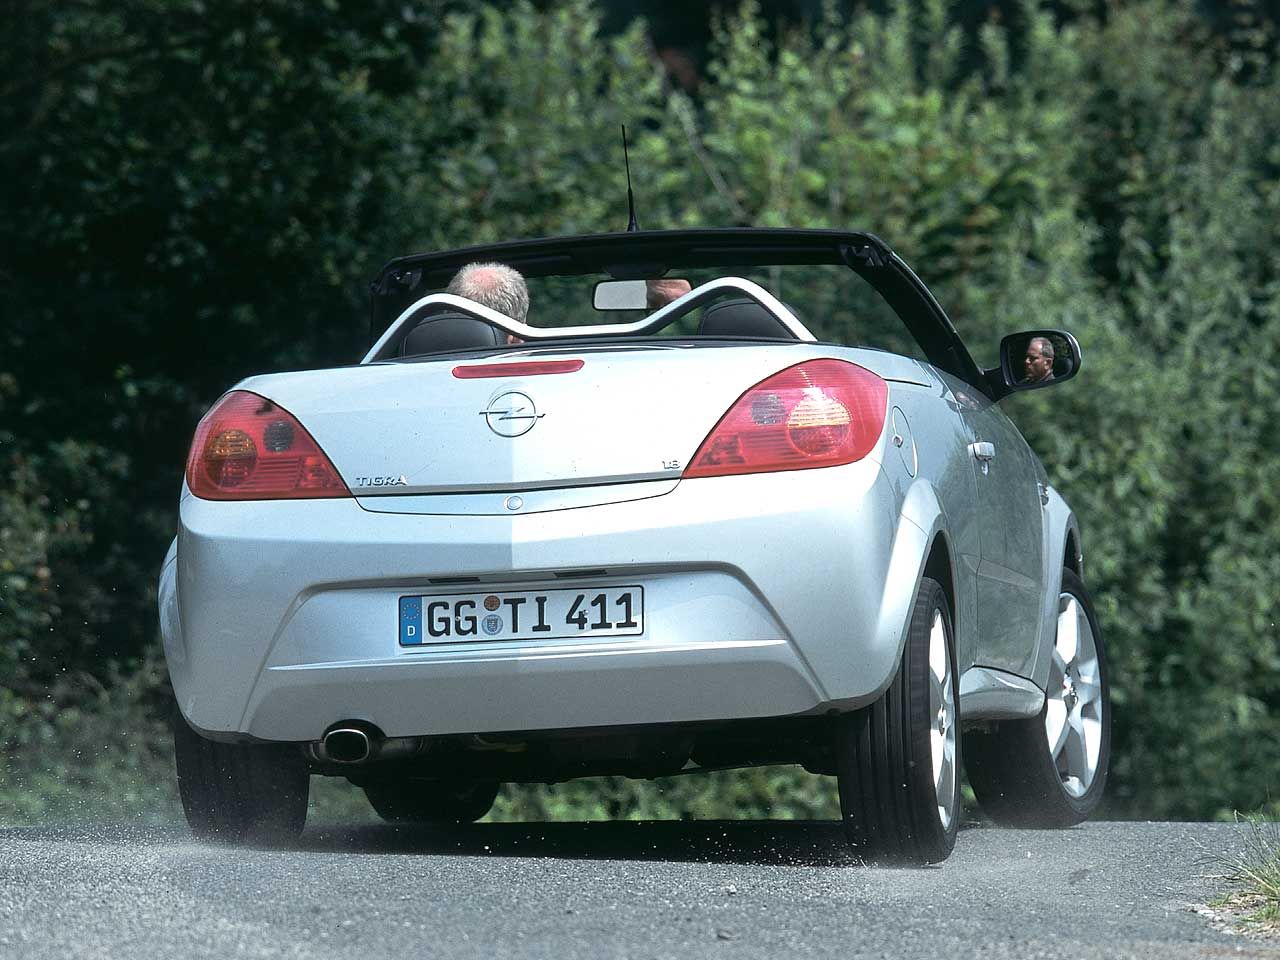 Opel Tigra TwinTop 1.8: Frischluft-Spaß für zwei